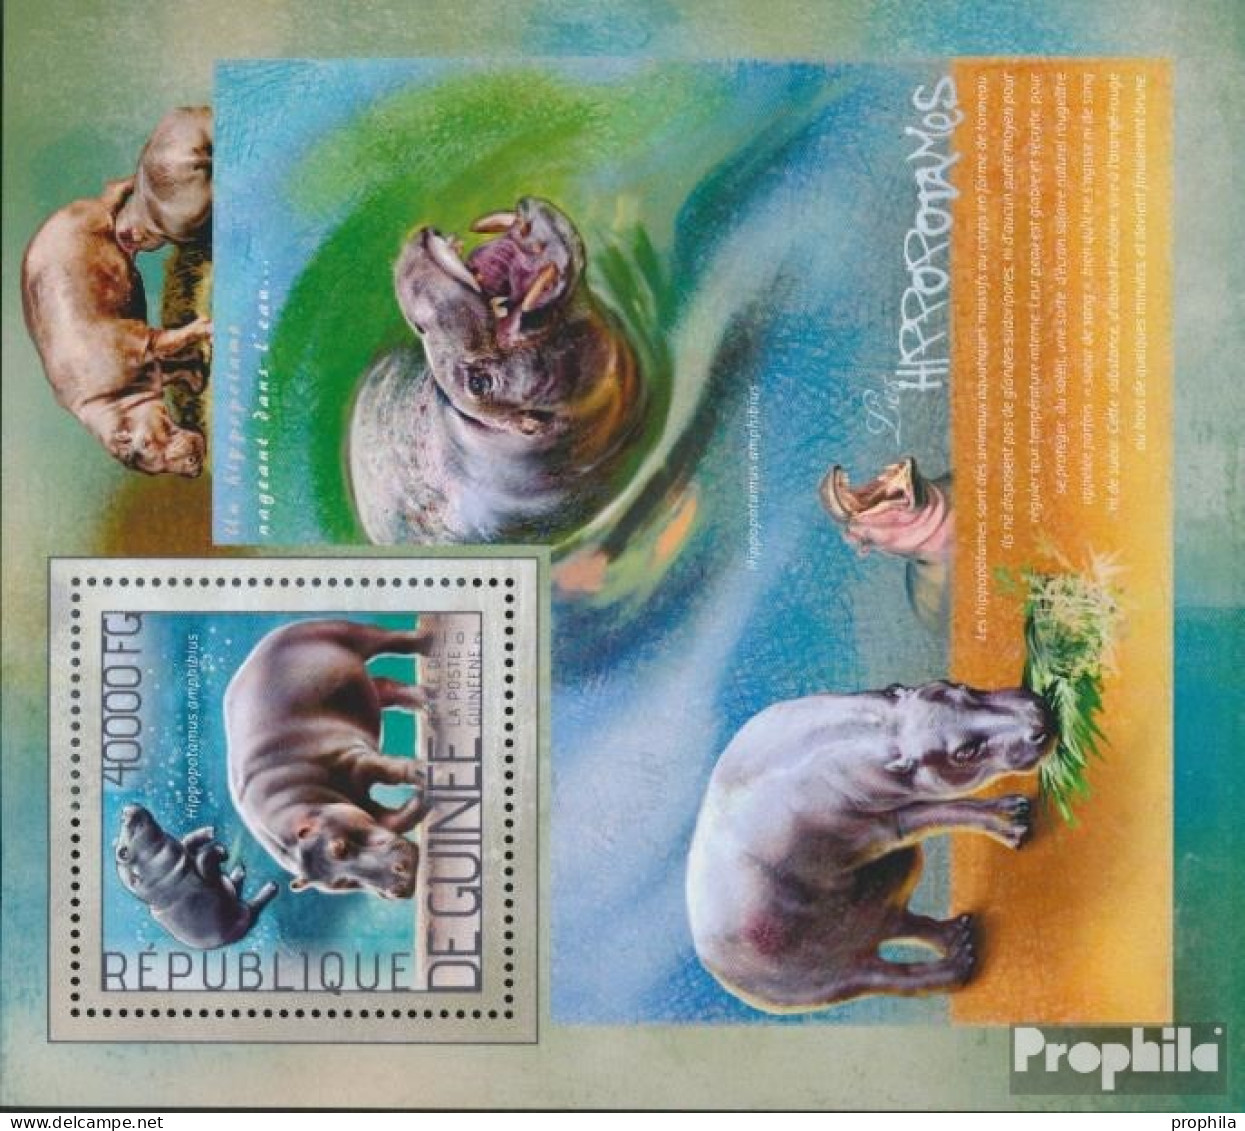 Guinea Block 2370 (kompl. Ausgabe) Postfrisch 2014 Nilpferd - Guinee (1958-...)